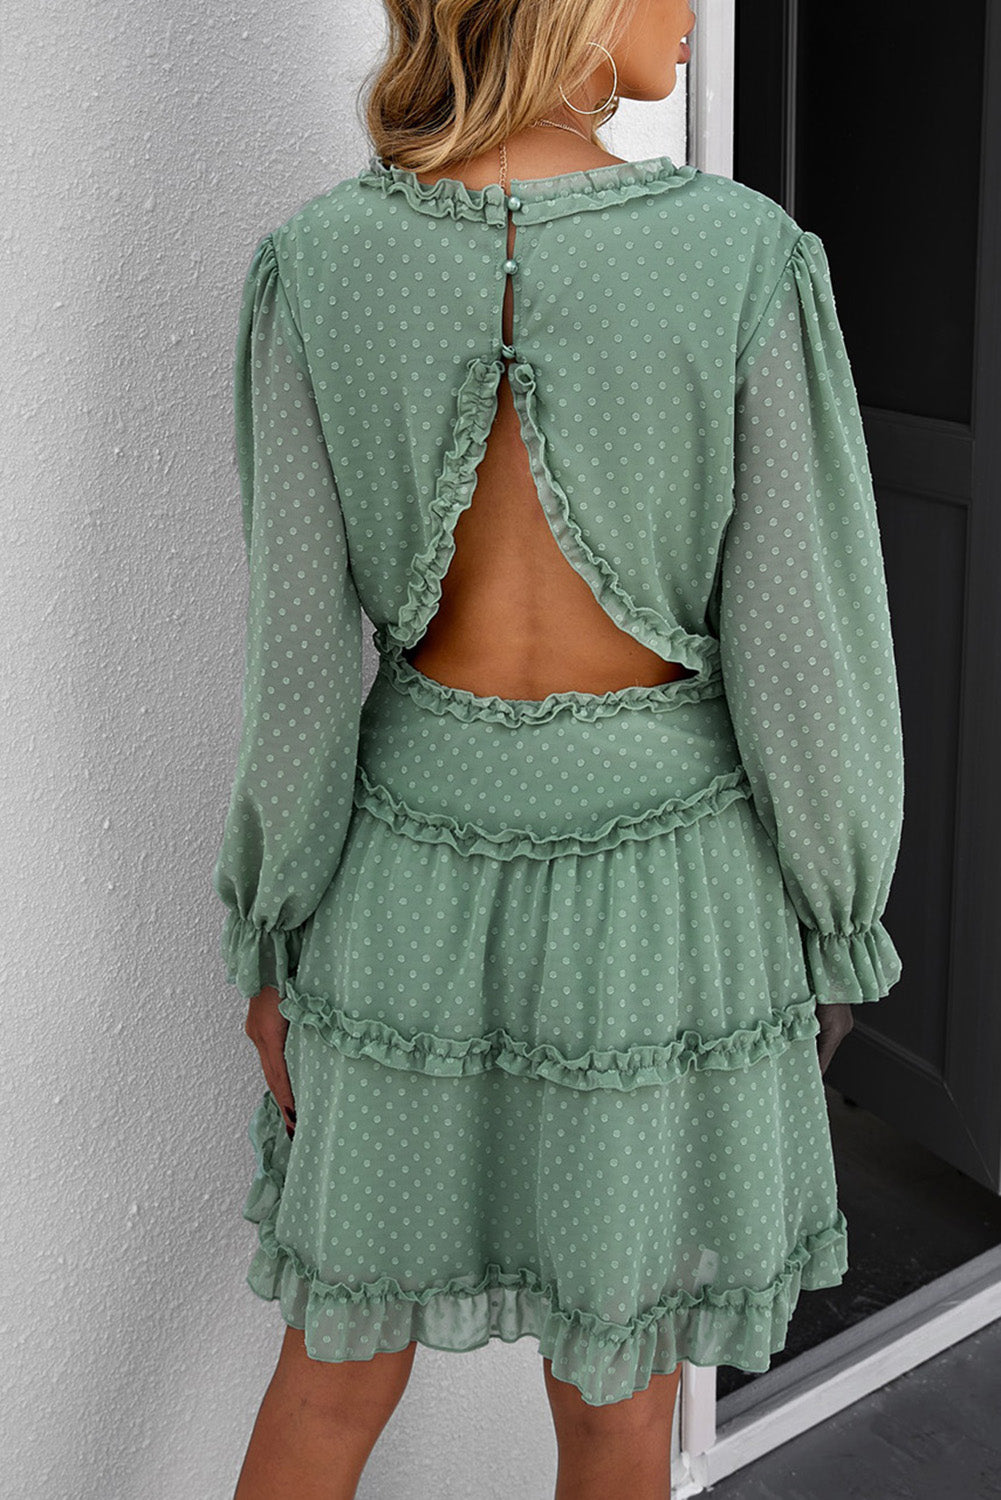 Mini-robe superposée à volants, dos ouvert, manches bouffantes, pois suisses vert